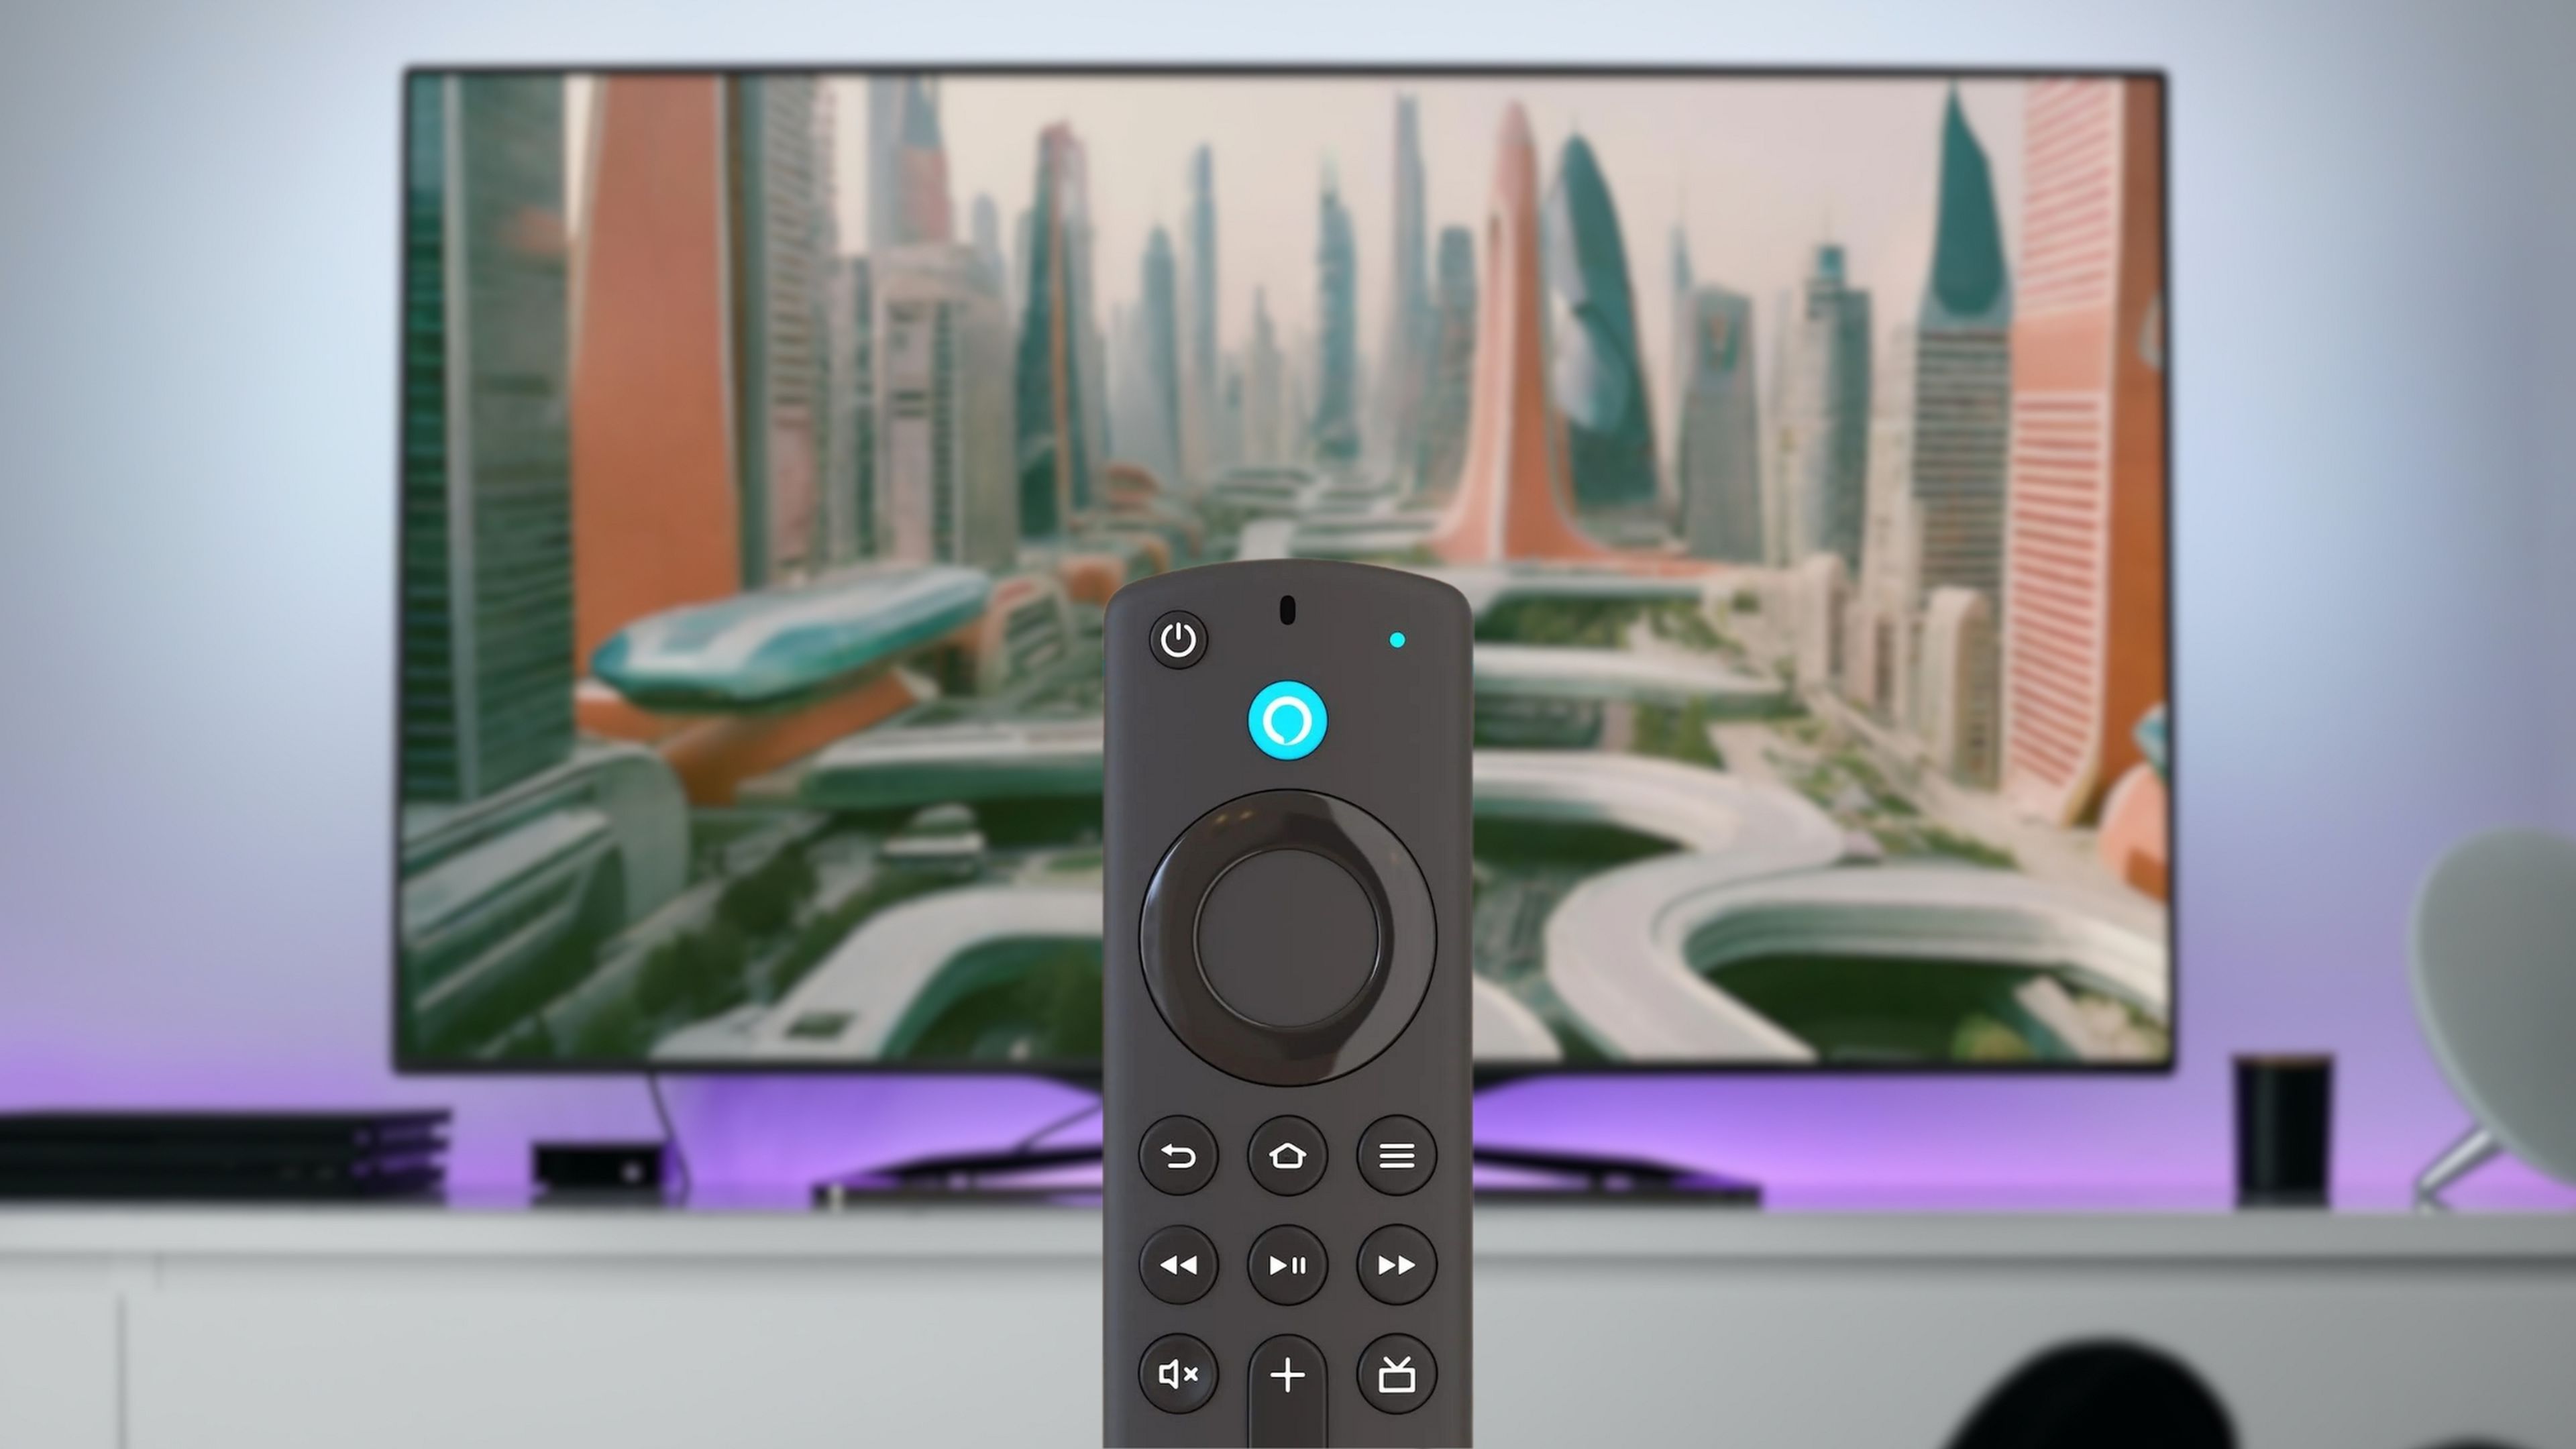 Qué significan las luces en el mando a distancia del Amazon Fire TV